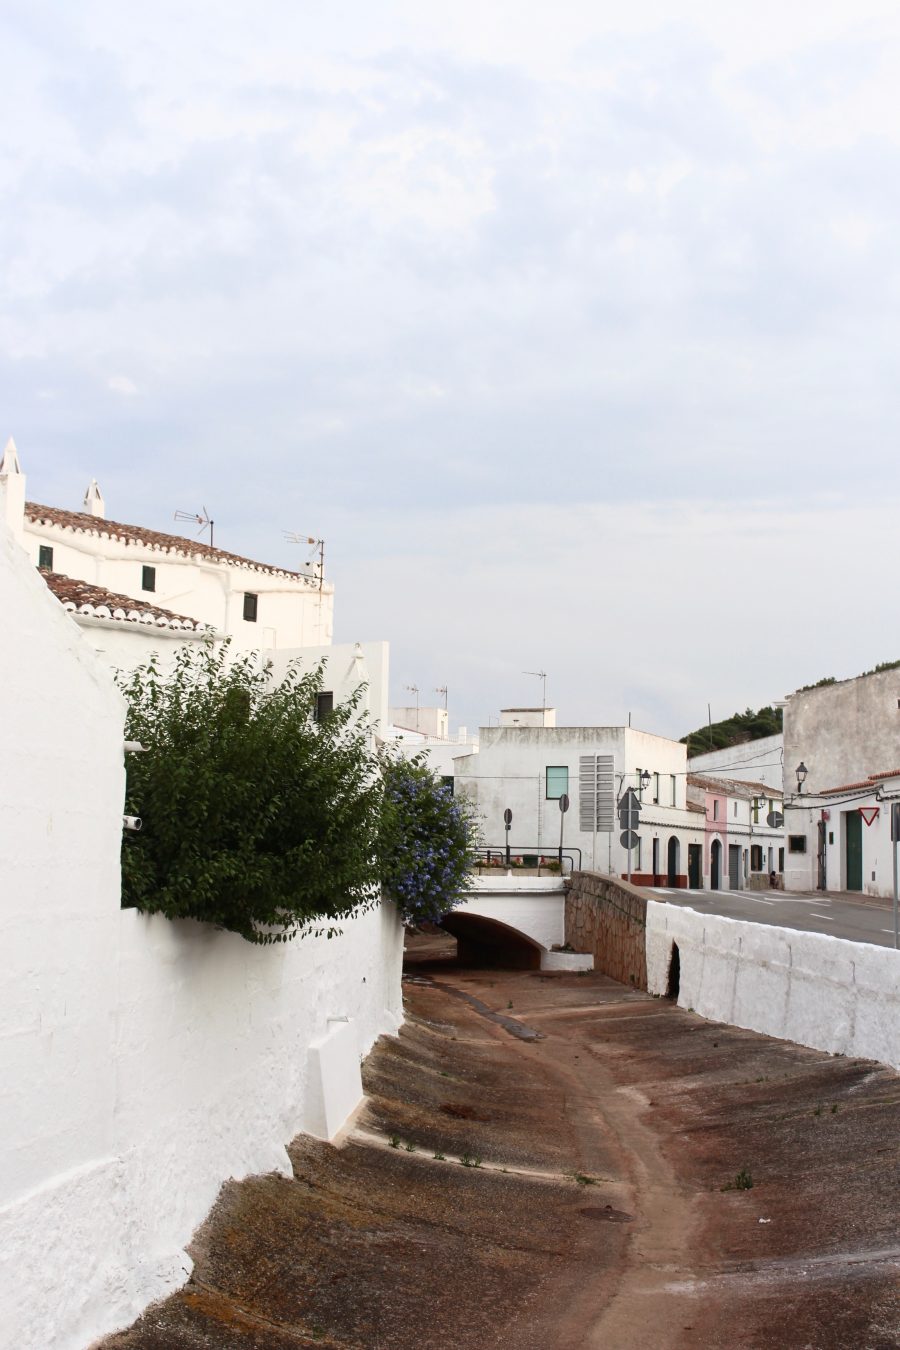 Menorca 